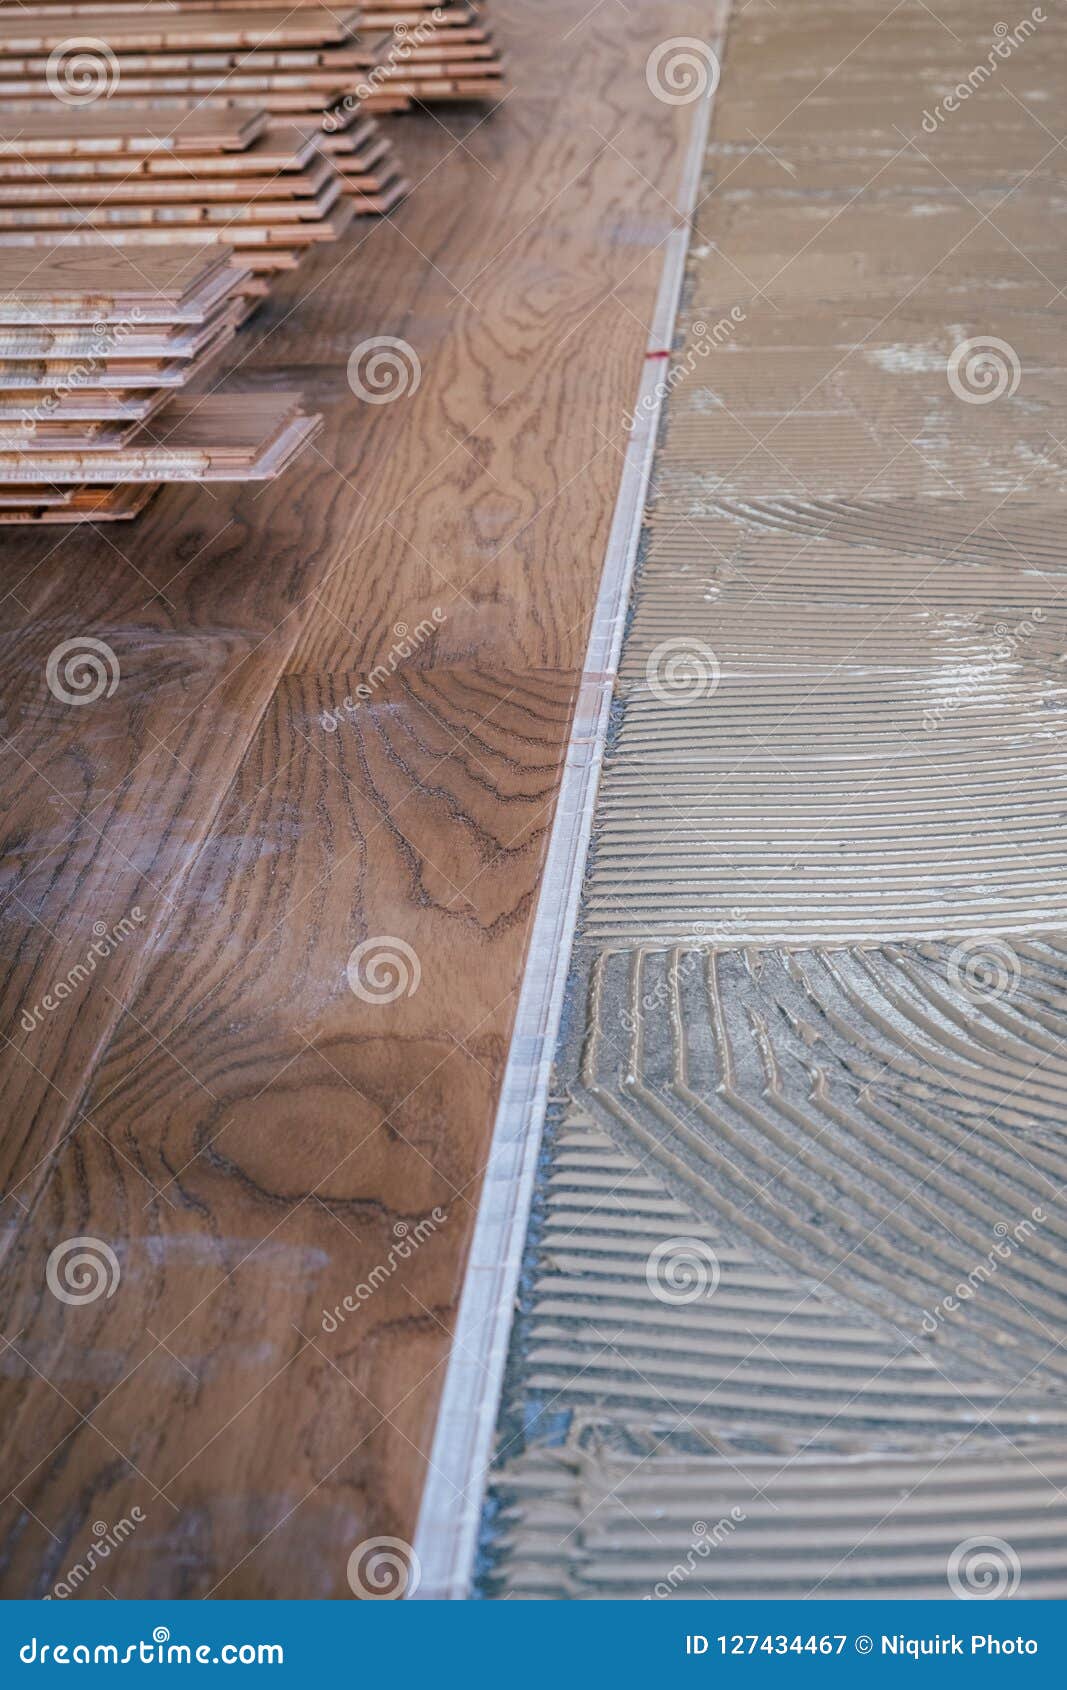 Laminated Wooden Boards Instalaltion Stock Image Image Of